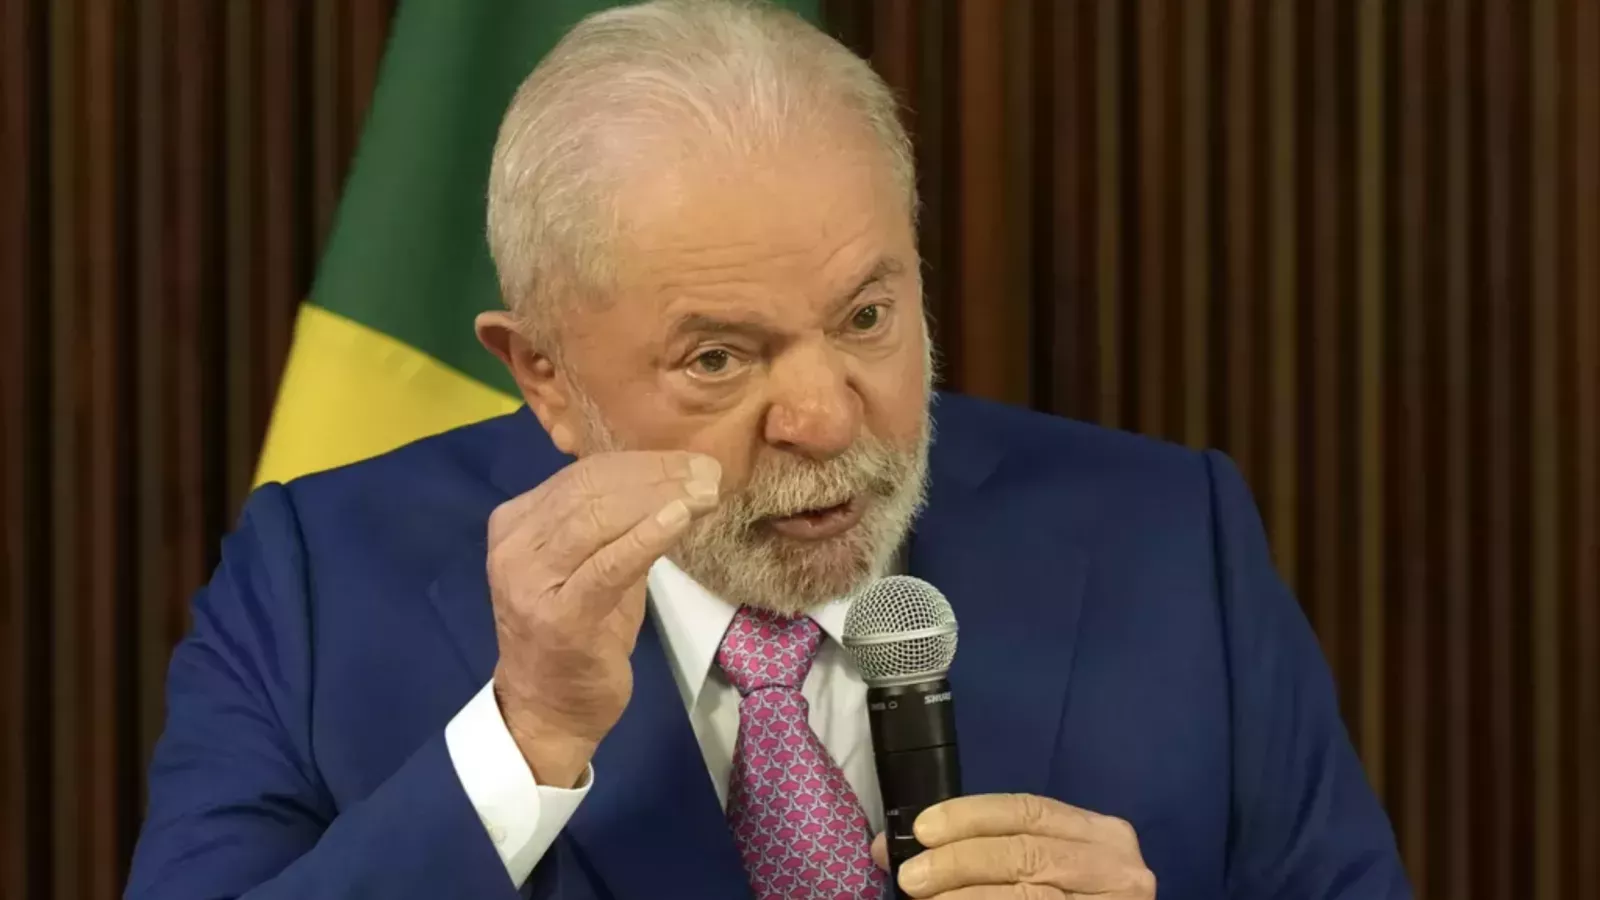 El gobierno de Lula adopta un pronombre neutro en los actos oficiales